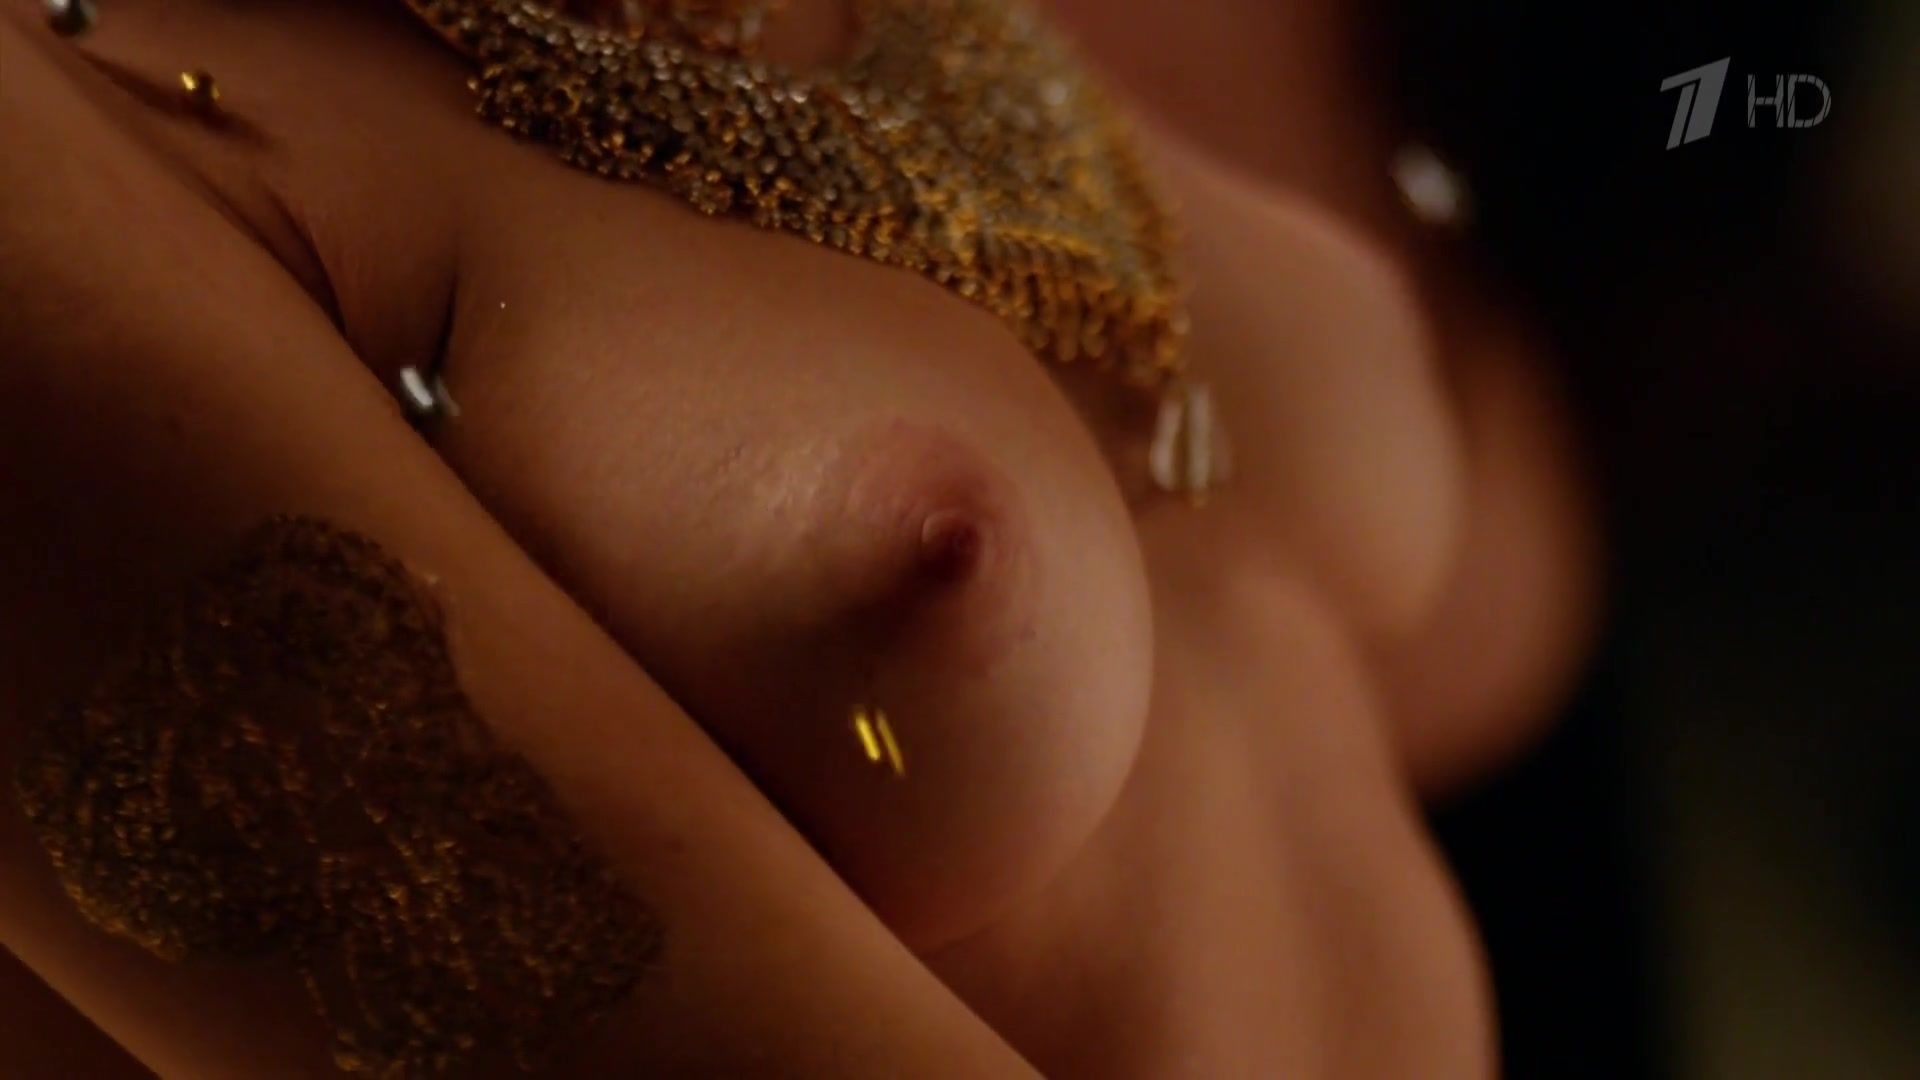 PerfectGirls Topless video | Nude Celebs Vahina Giocante - Mata Hari s01e07 (2017) Swallow